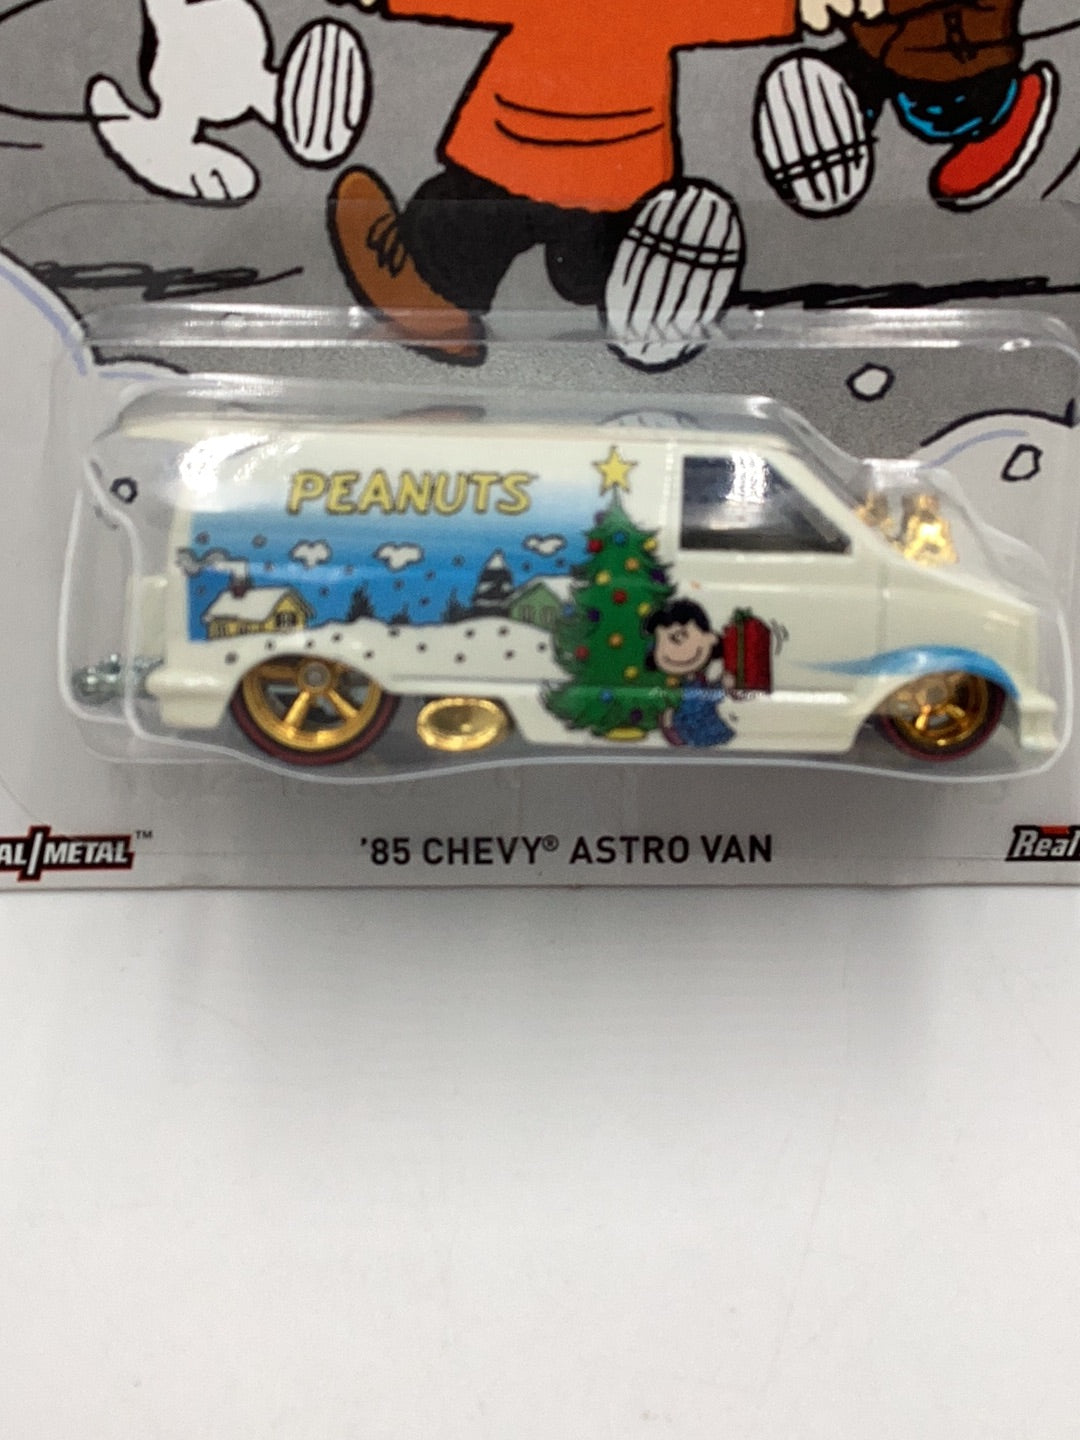 Hot wheels Peanuts 1985 Chevy Astro Van